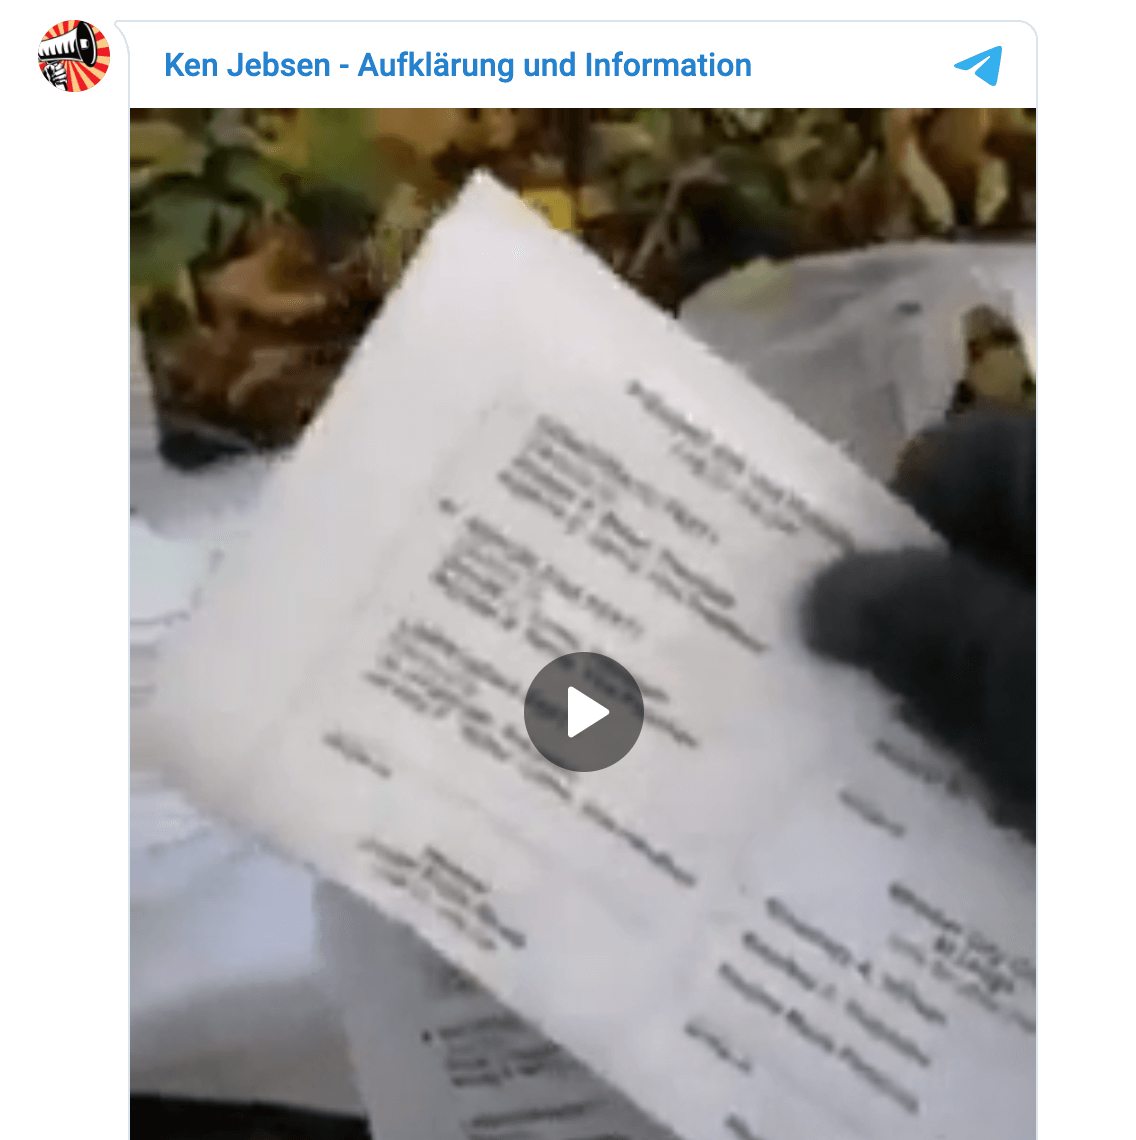 Das Video mit der angeblichen Verbrennung von Stimmzetteln im Telegram-Kanal von Ken Jebsen